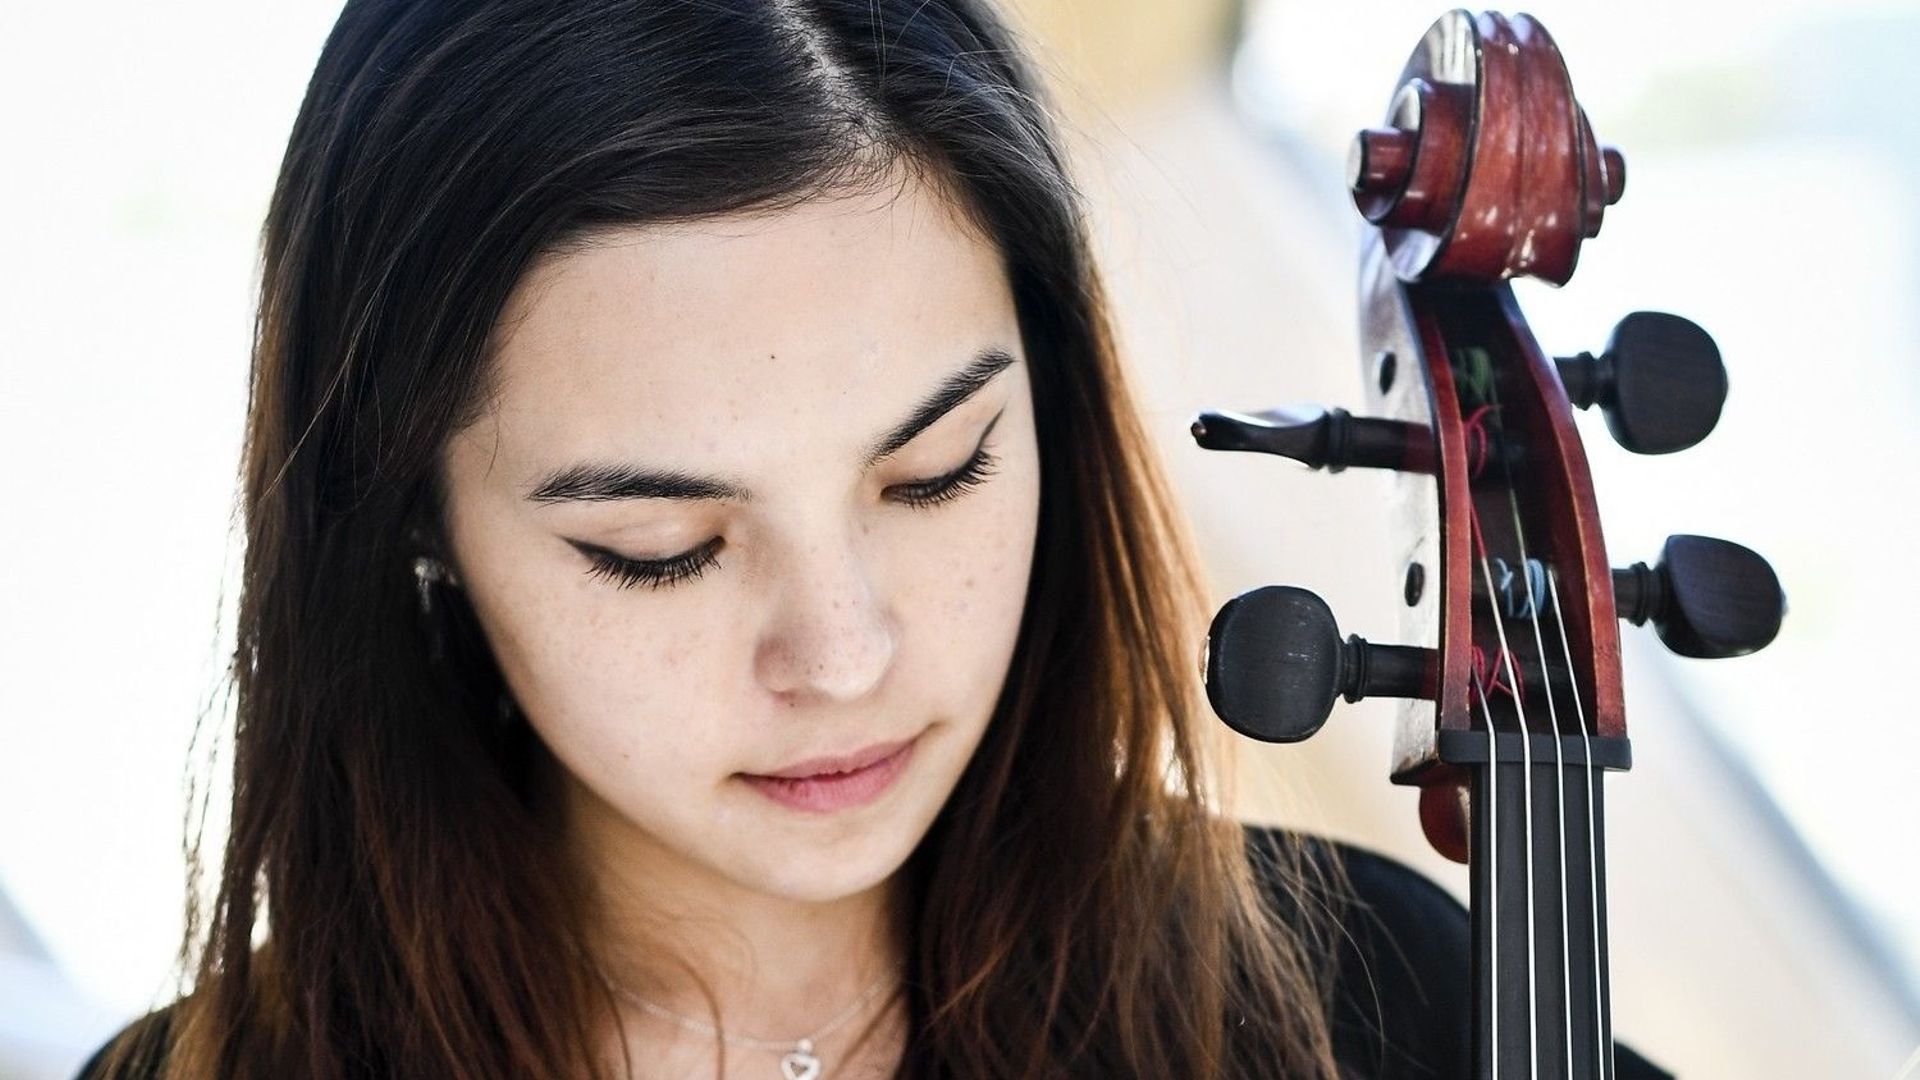 Concours Reine Elisabeth 2022 : la violoncelliste belge Stéphanie Huang parmi les candidats sélectionnés